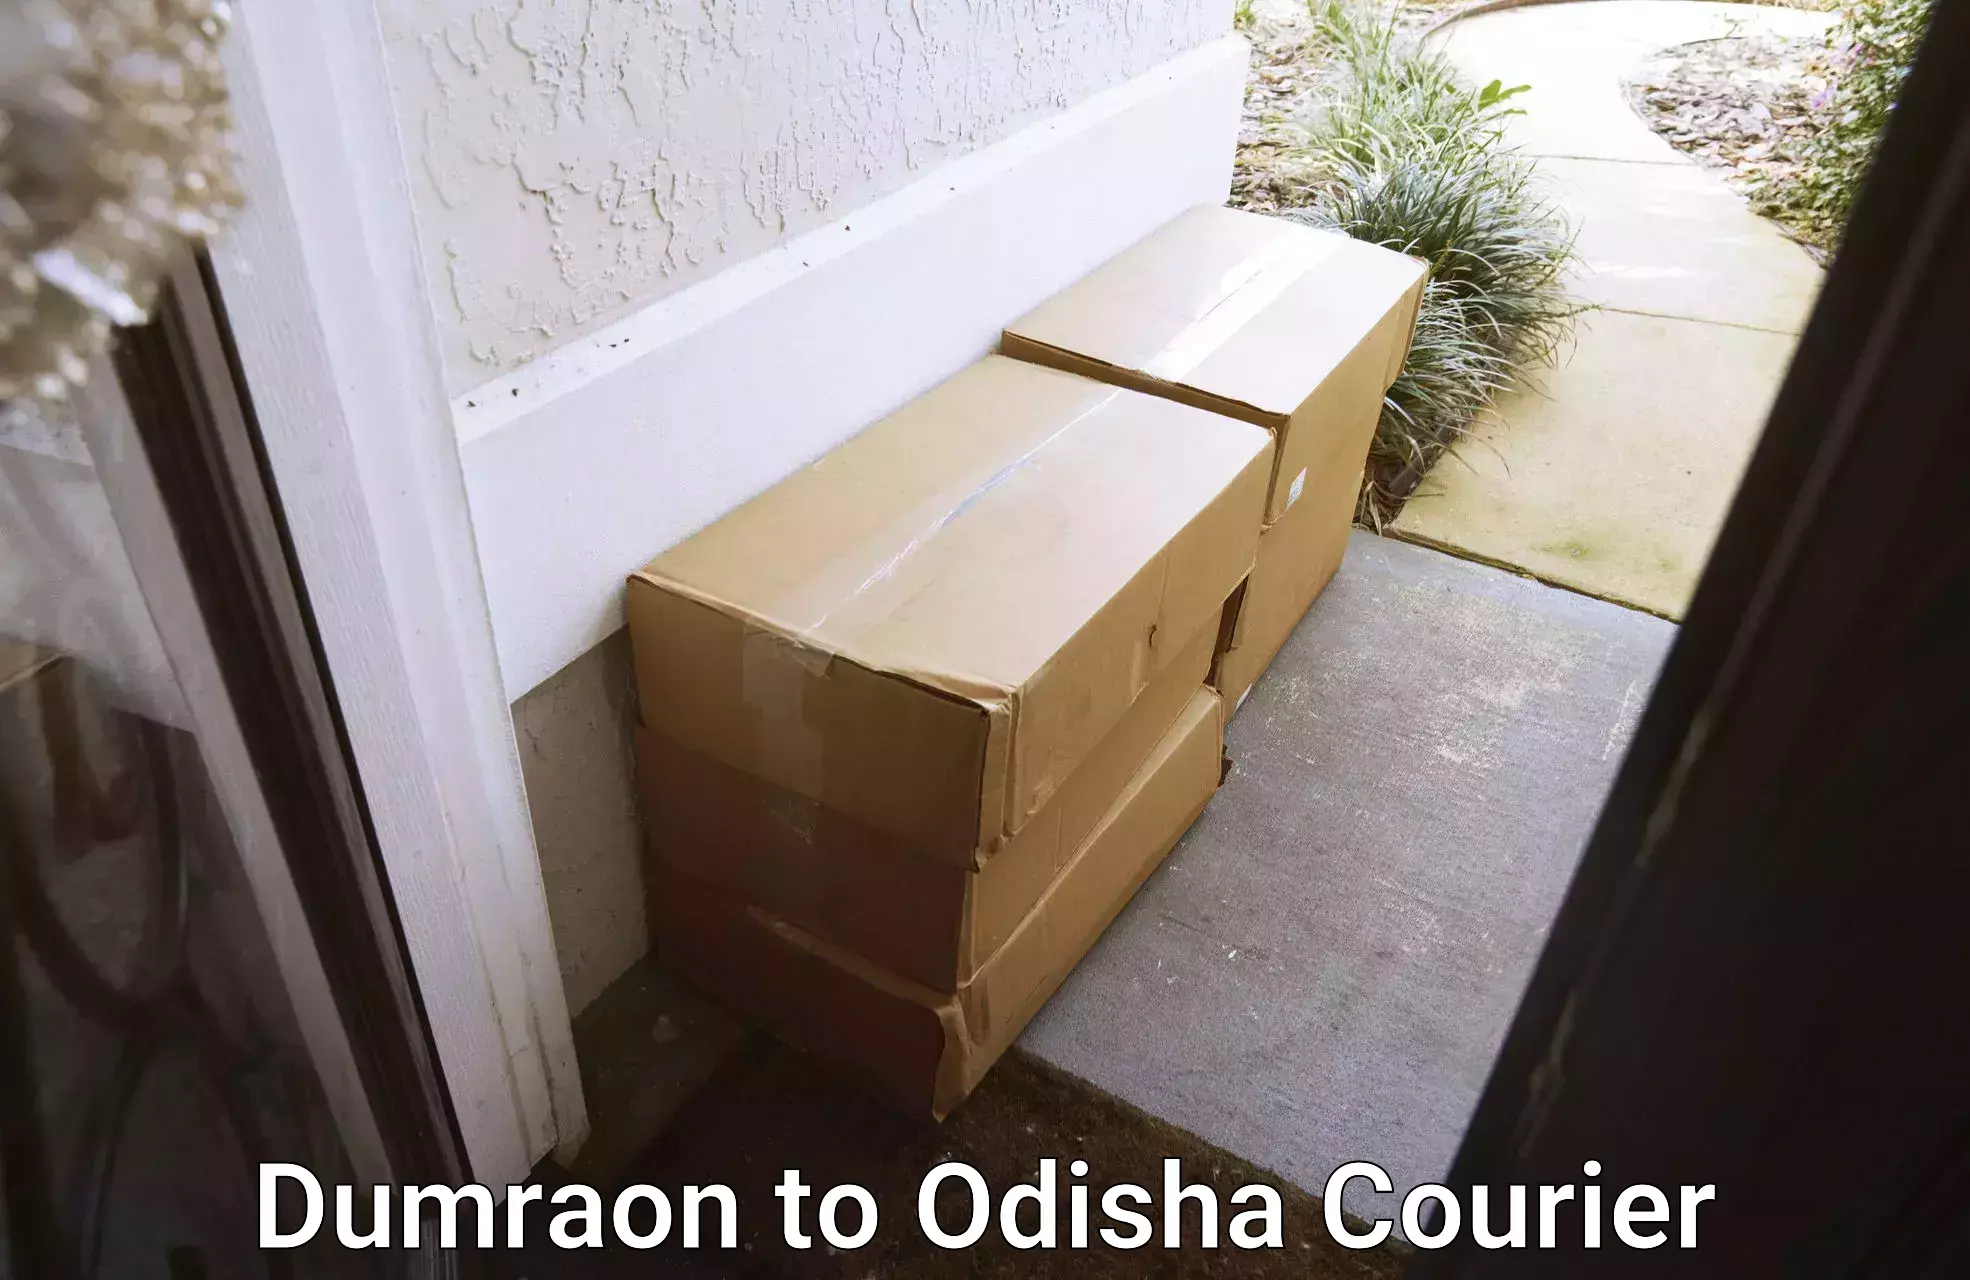 Quality household transport Dumraon to Odisha